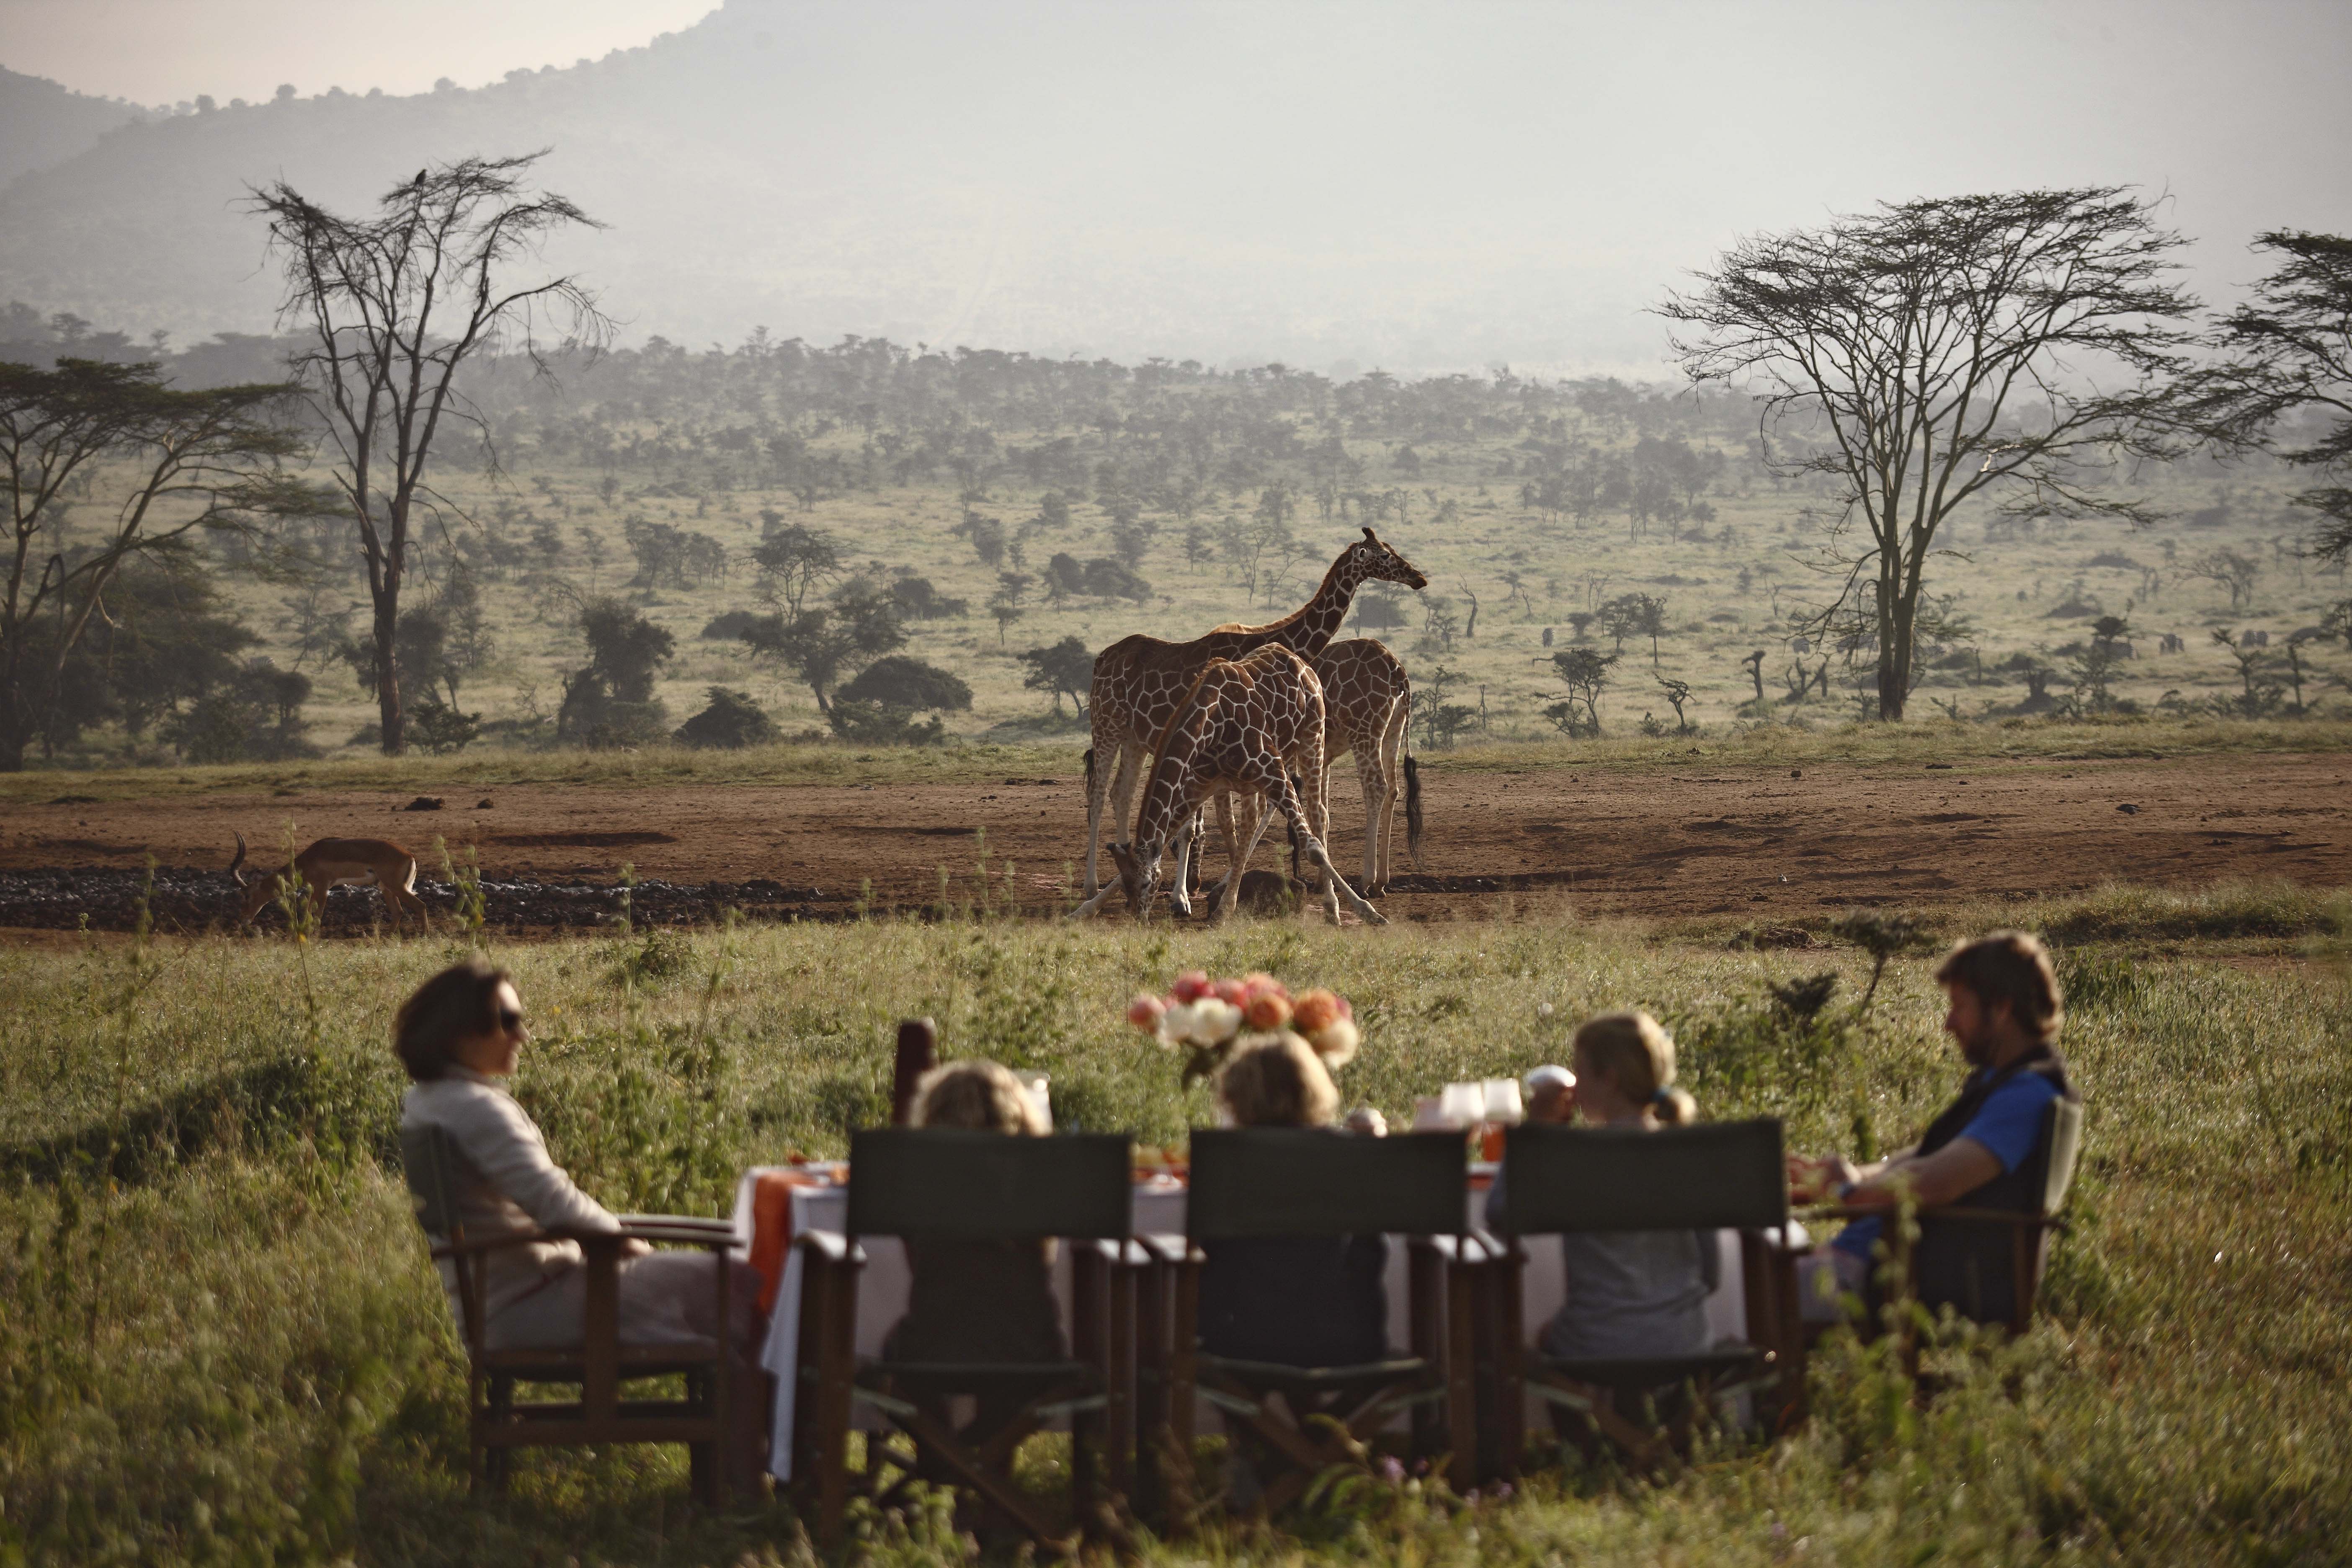 tanzania or kenya for safari